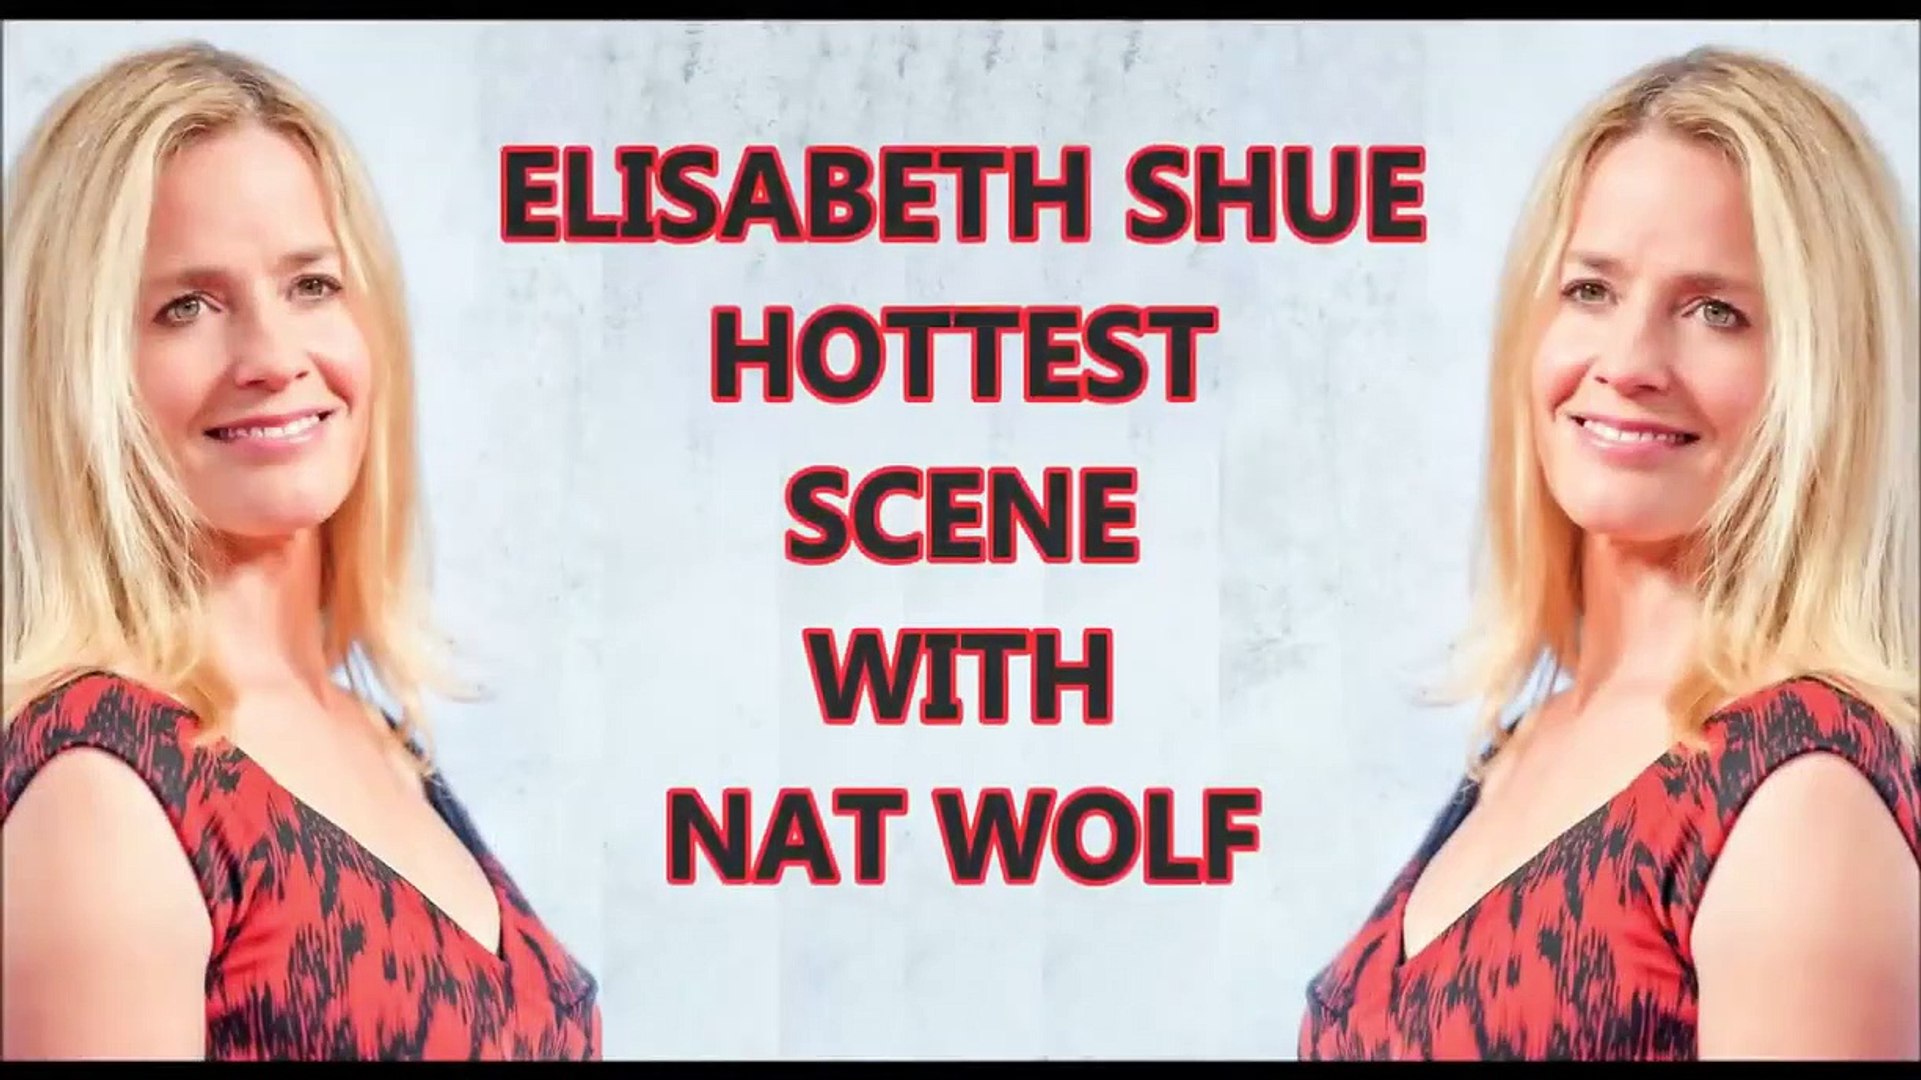 Hot elisabeth shue